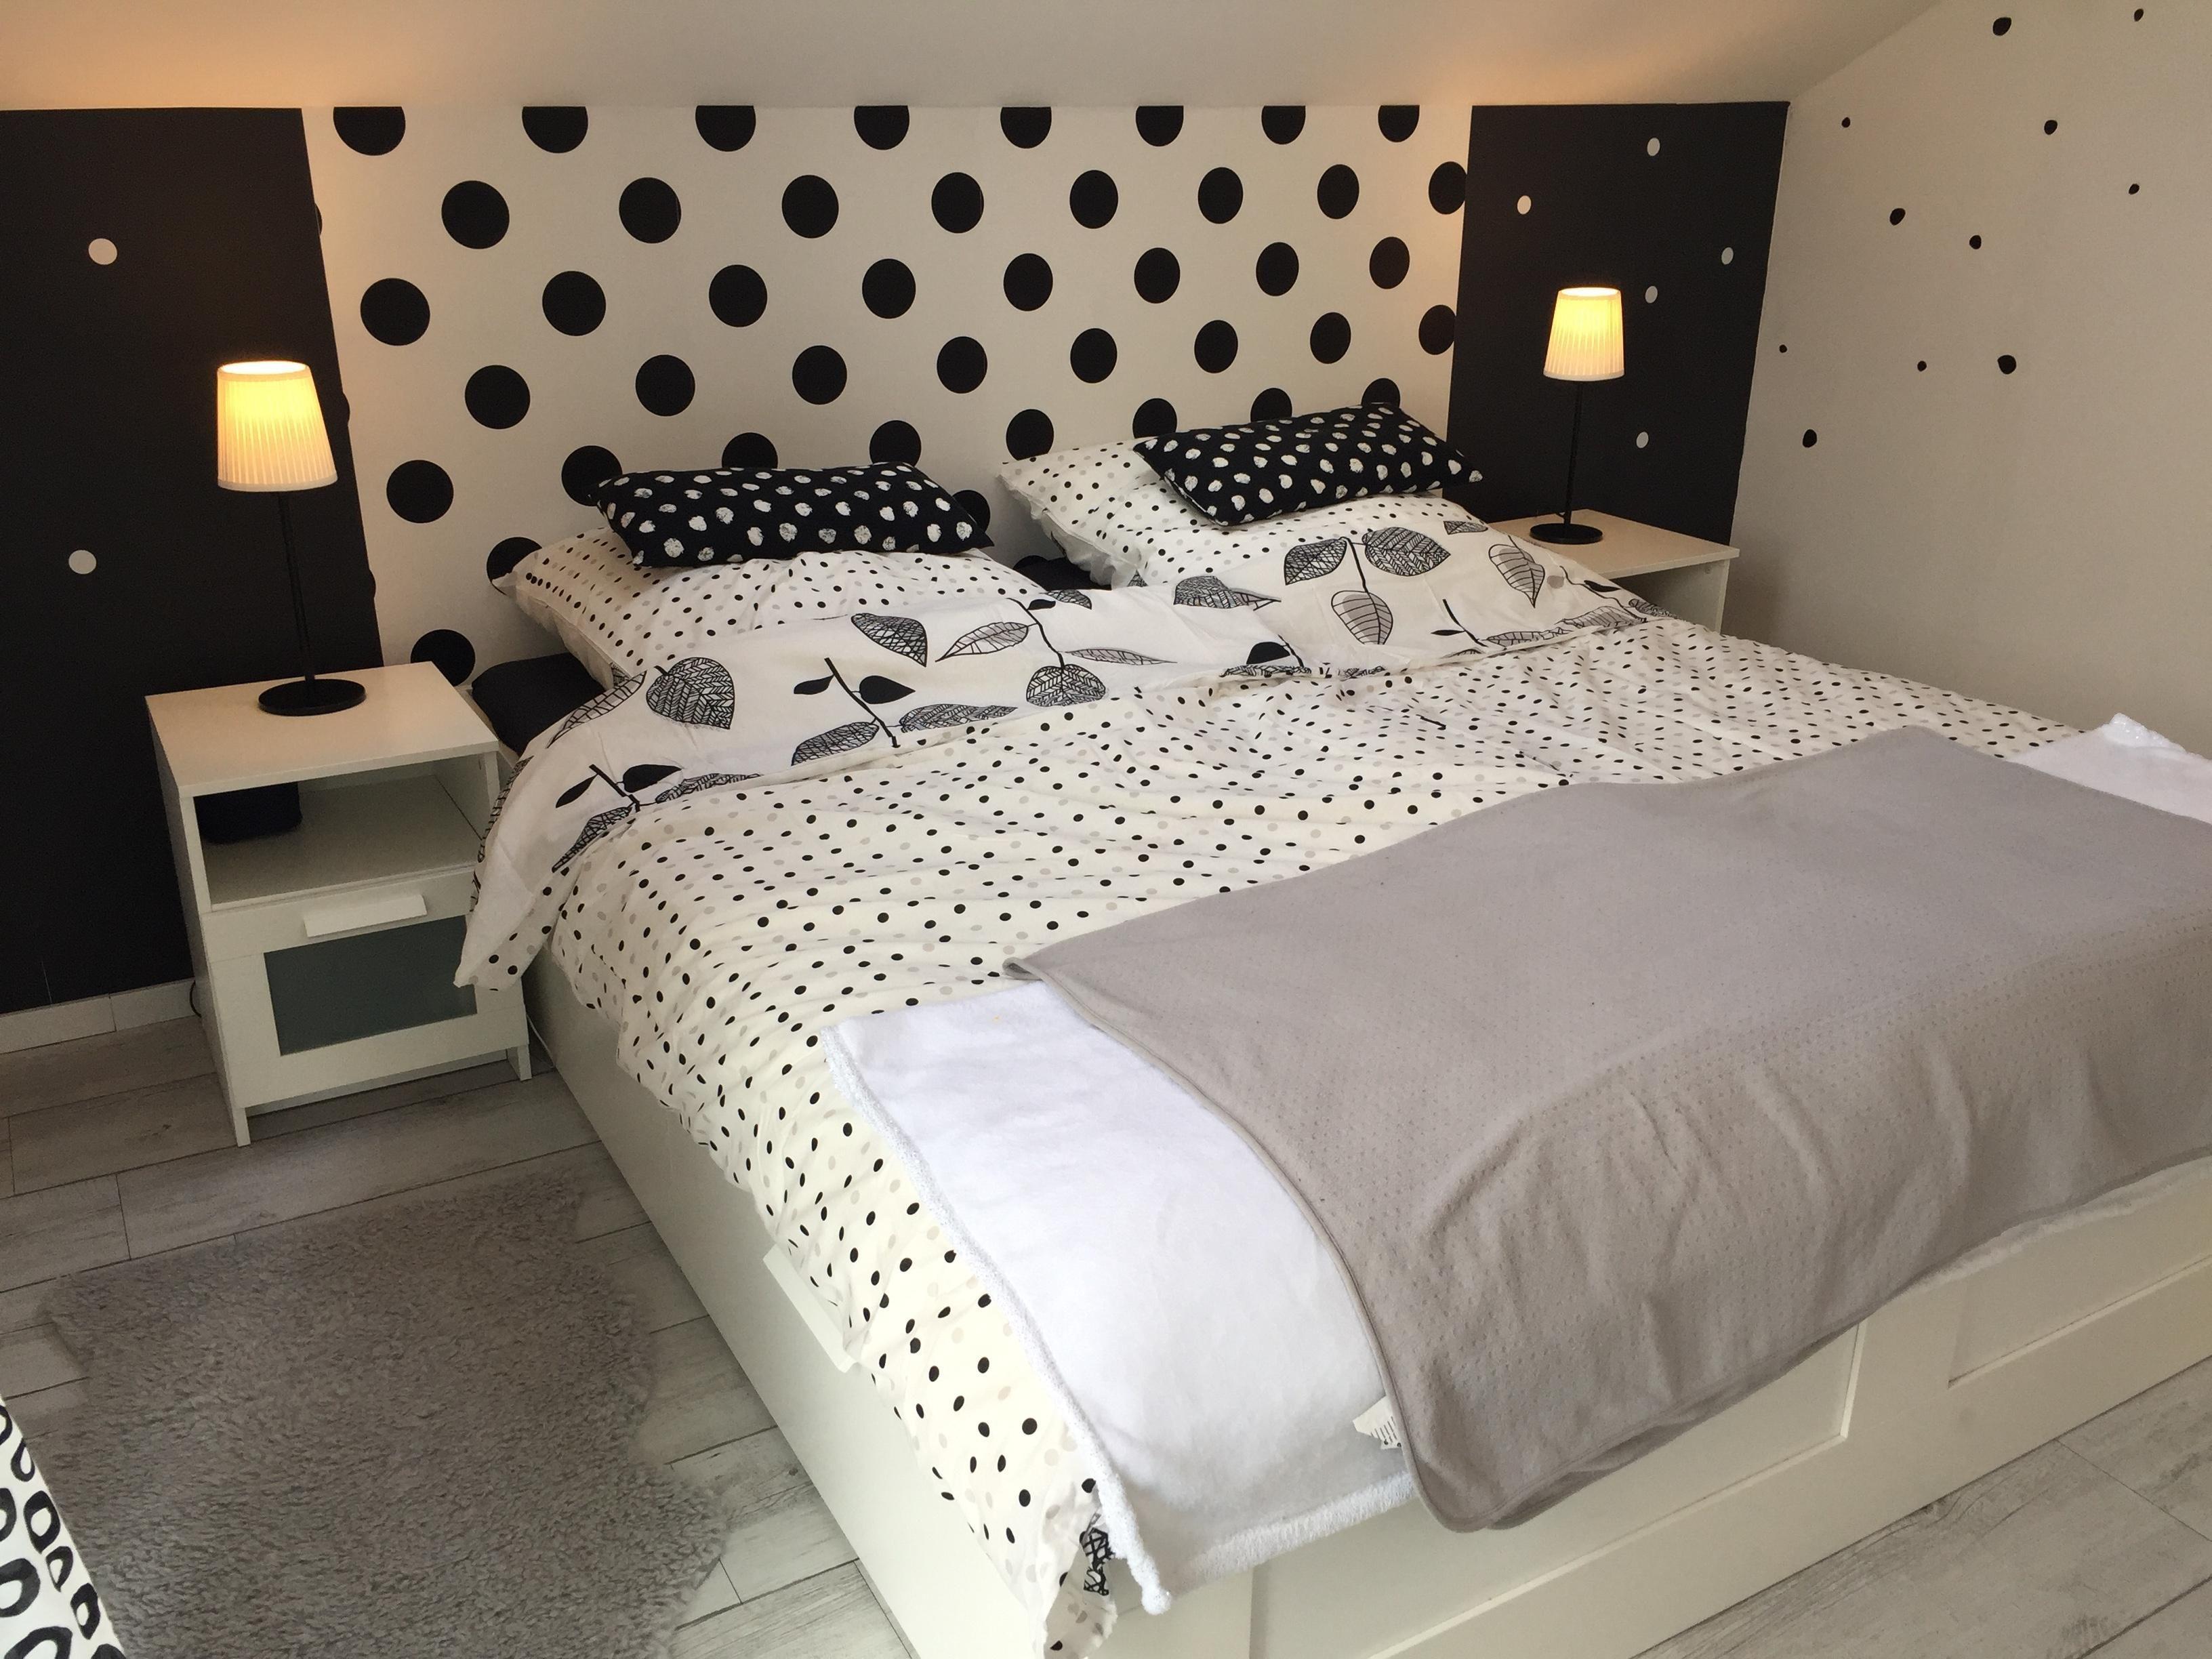 Punkteliebe ! #bedroom #cozy #blackandwhite #scandinavianhome #interior #schlafzimmer